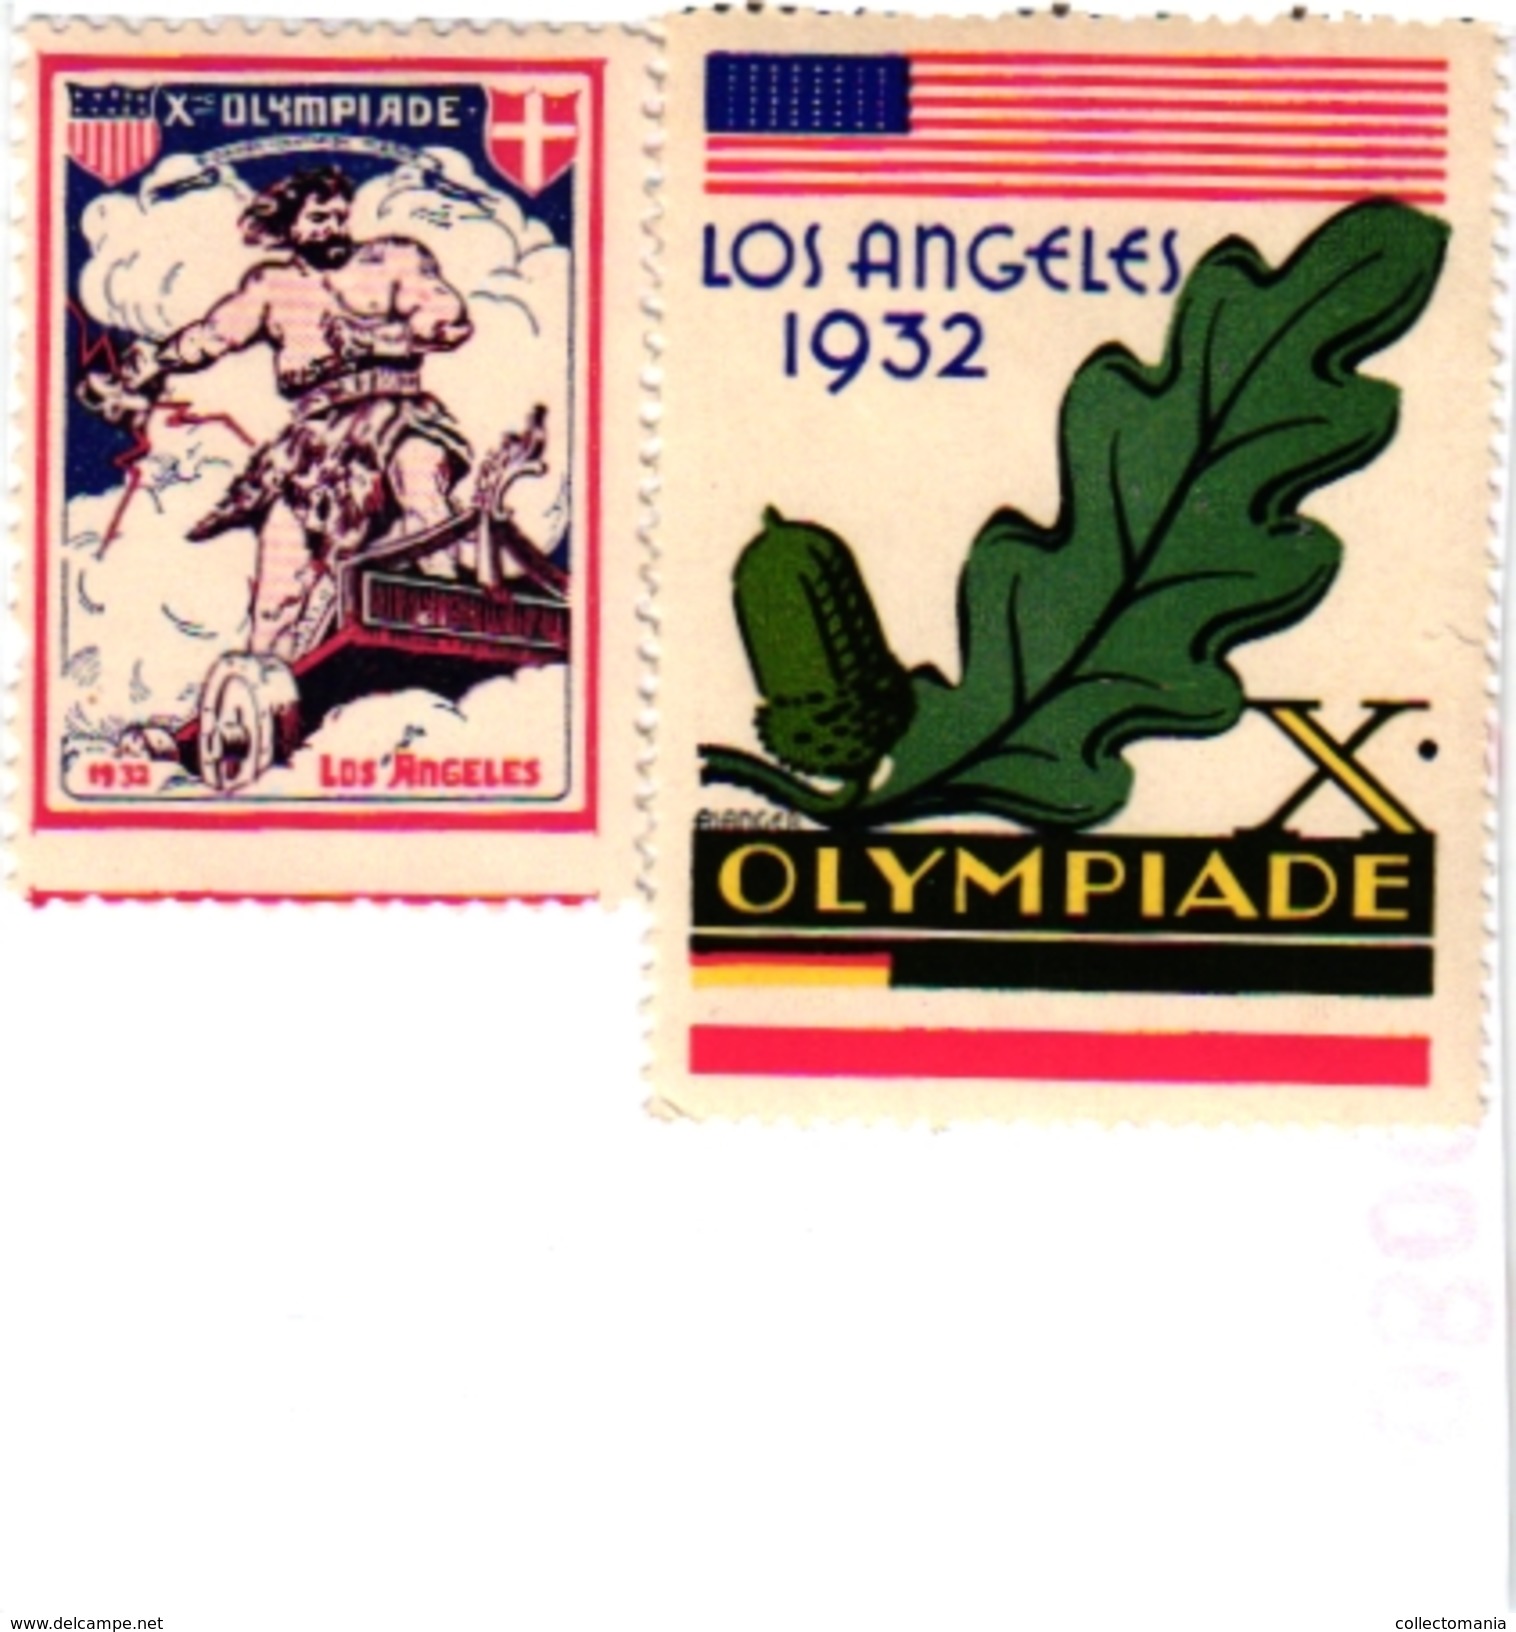 2 POSTER STAMPS Cinderella Olympiade LOS ANGELES 1932 - Estate 1932: Los Angeles